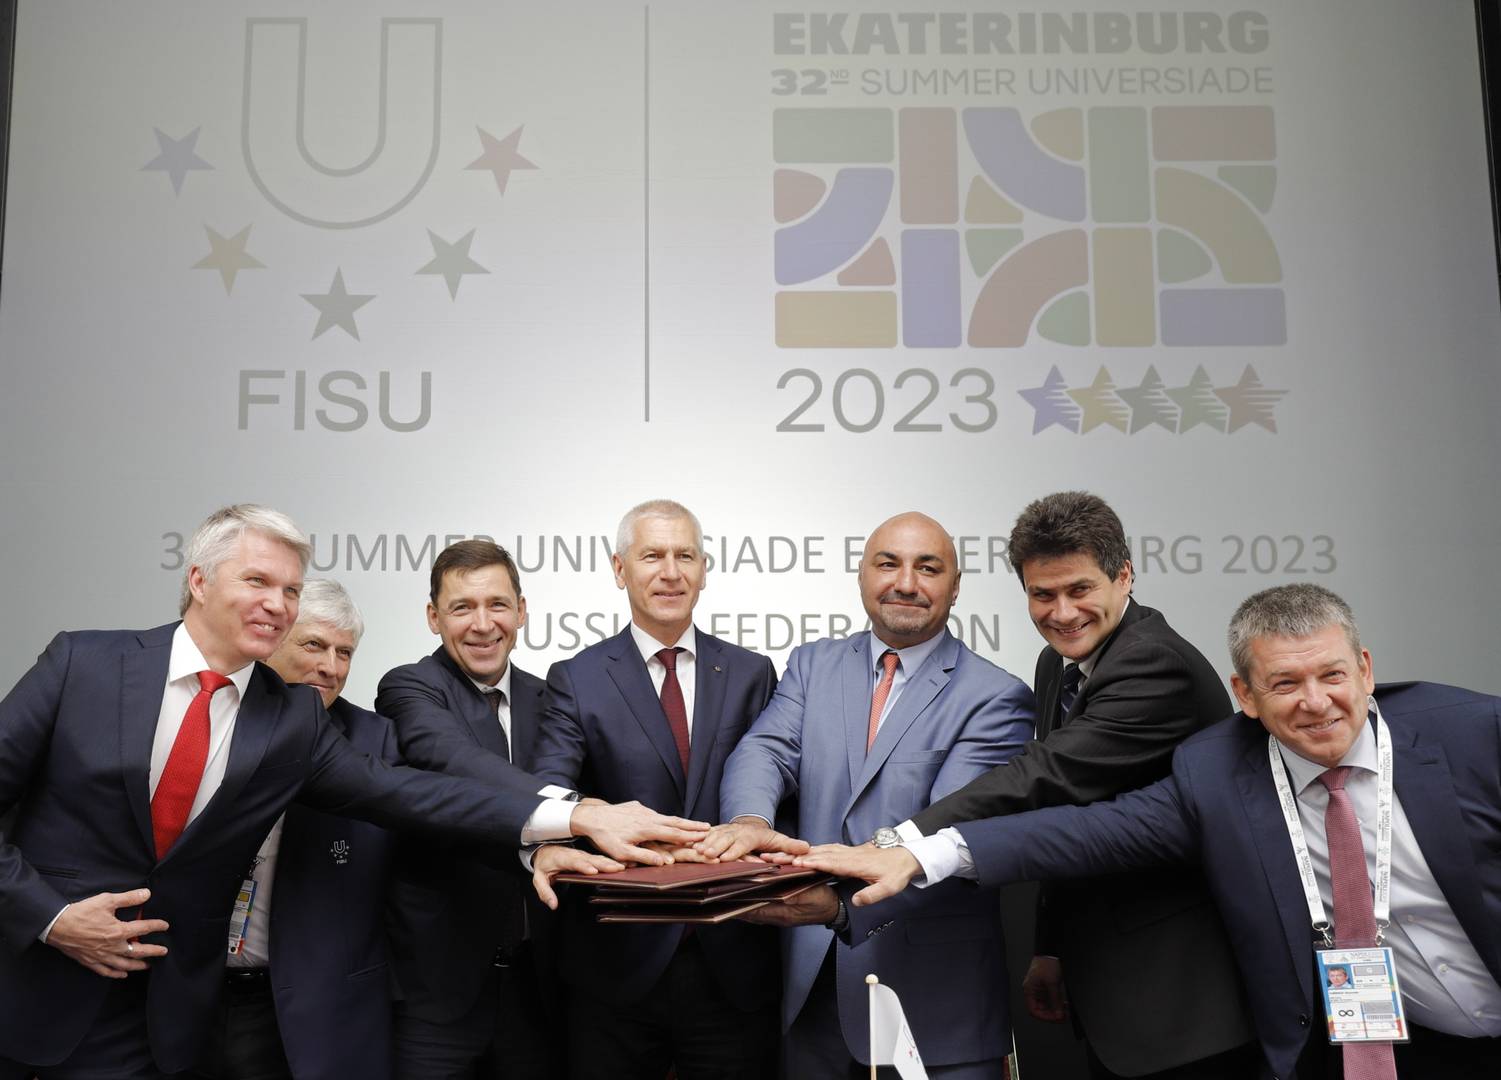 Путин подписал указ о подготовке Универсиады-2023 в Екатеринбурге